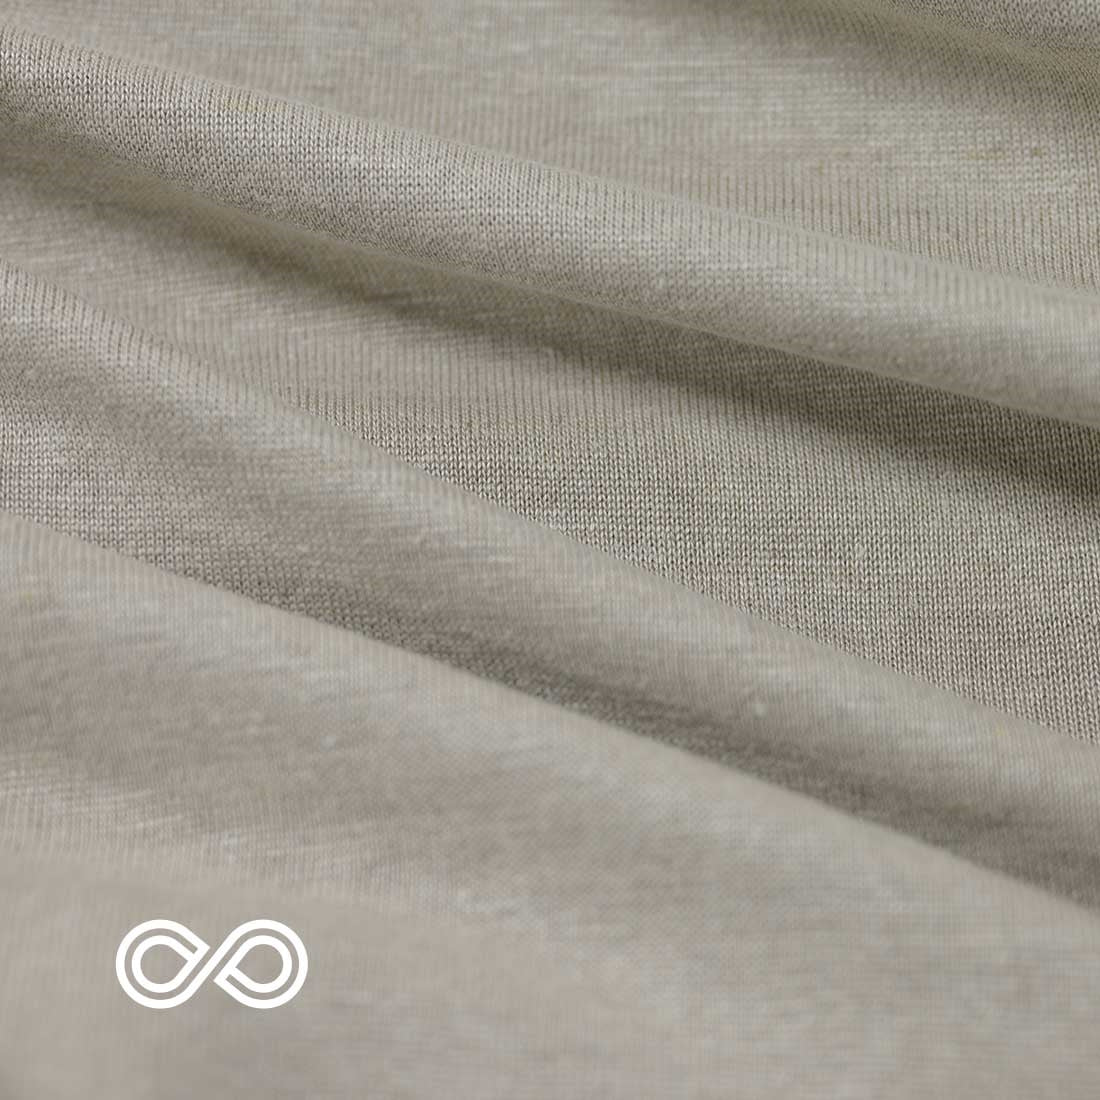 100% Organic Linen Jersey Knit Fabric By The Yard (Regular T-shirt Weight)